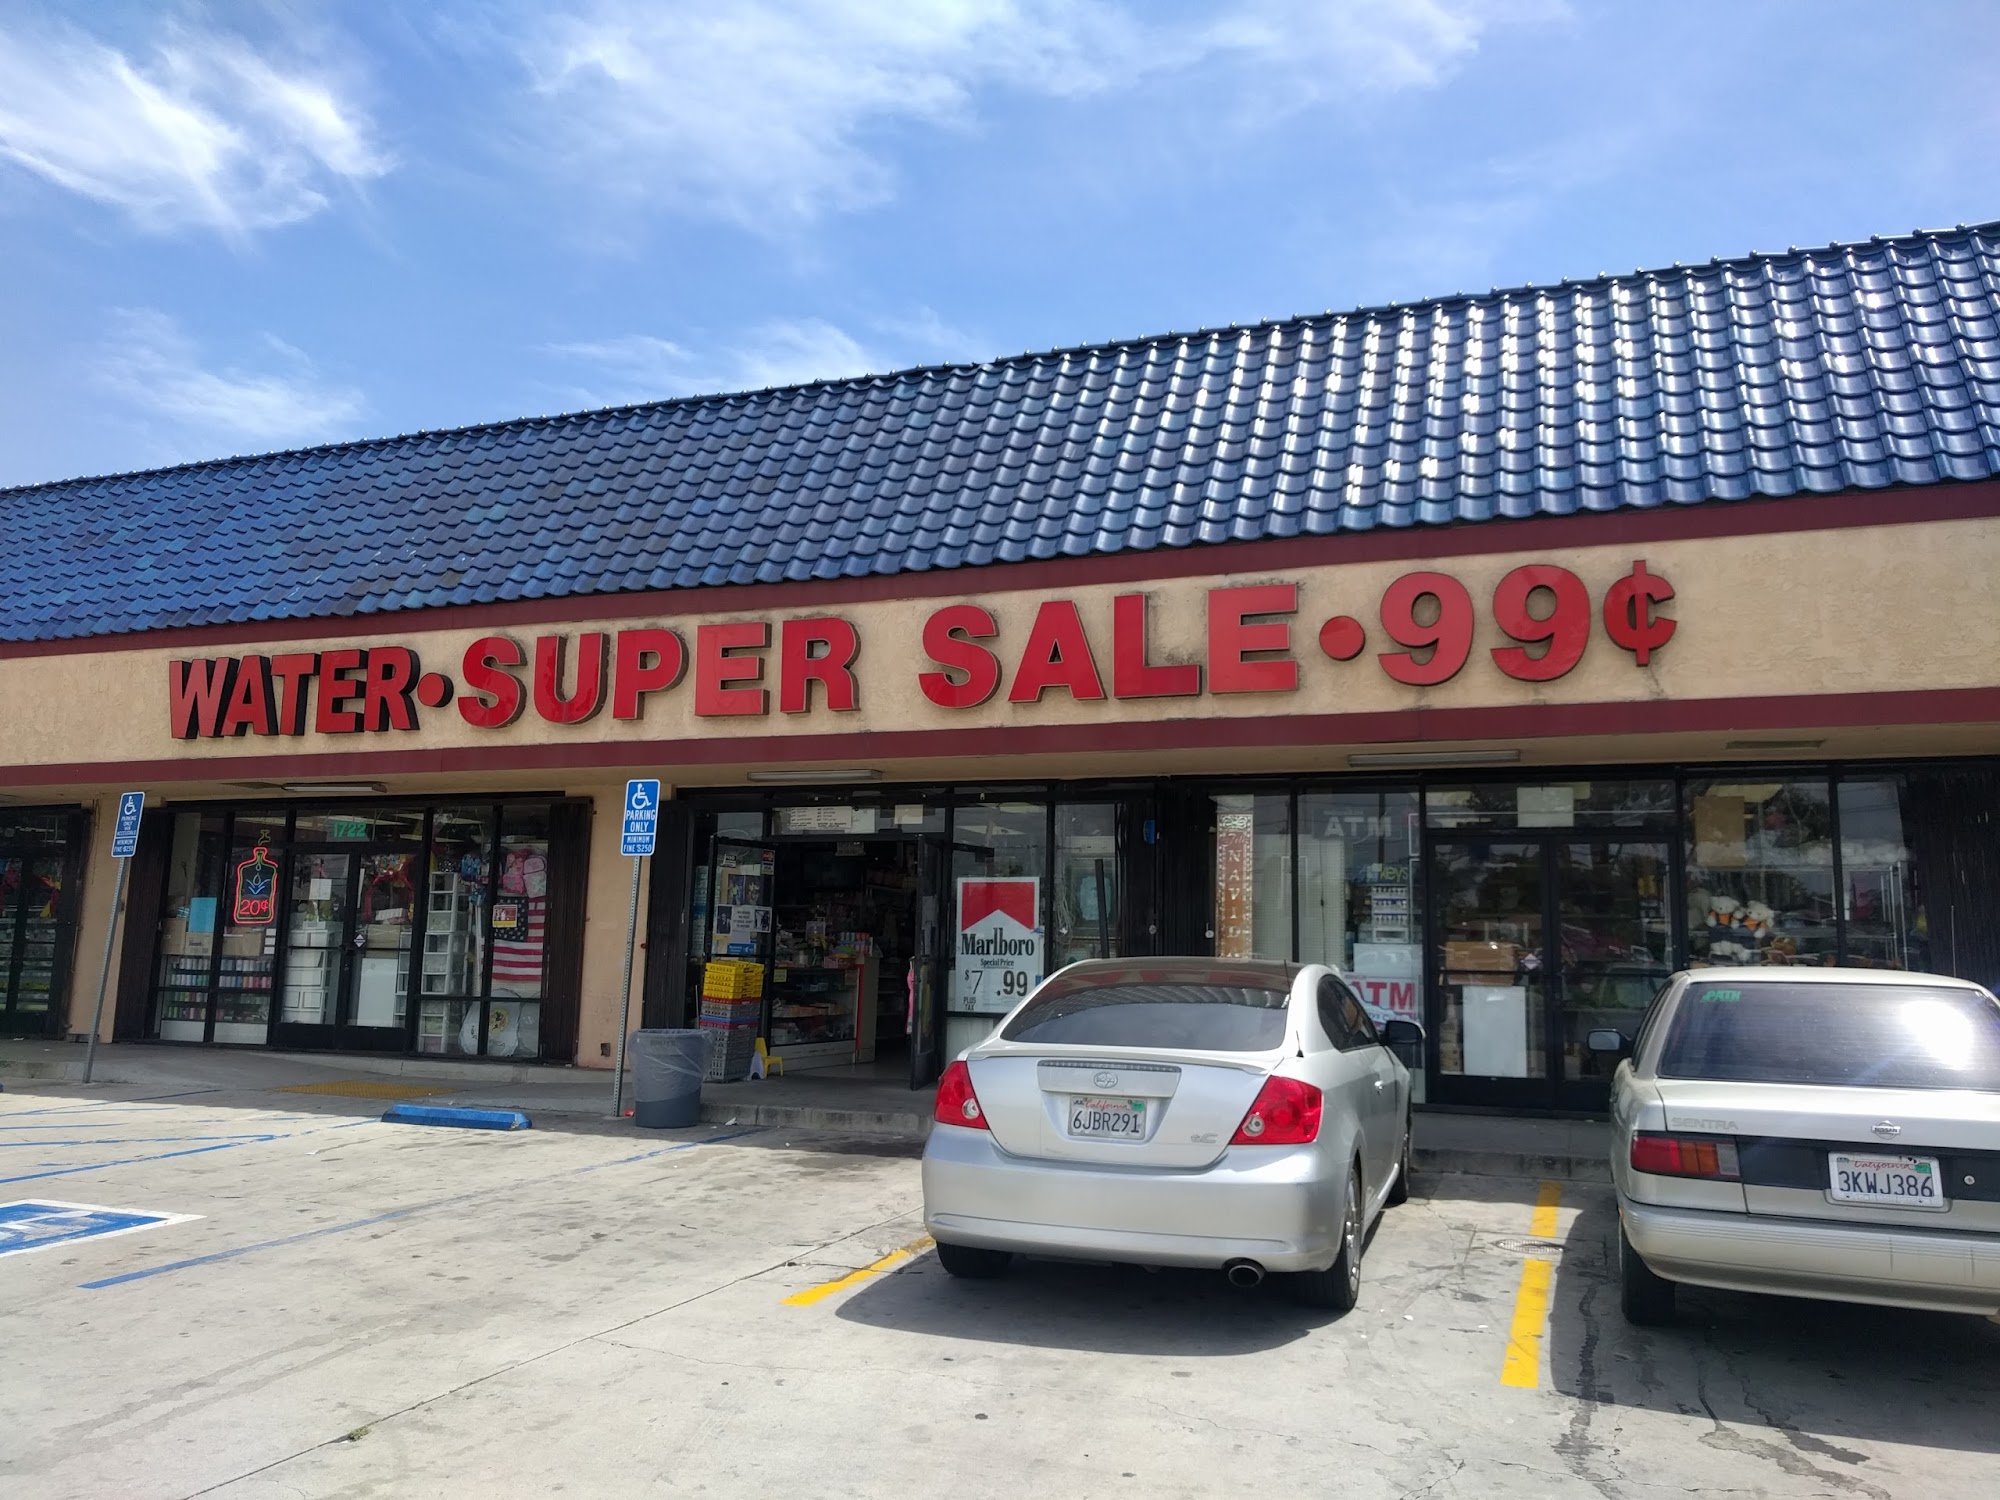 Super Sales